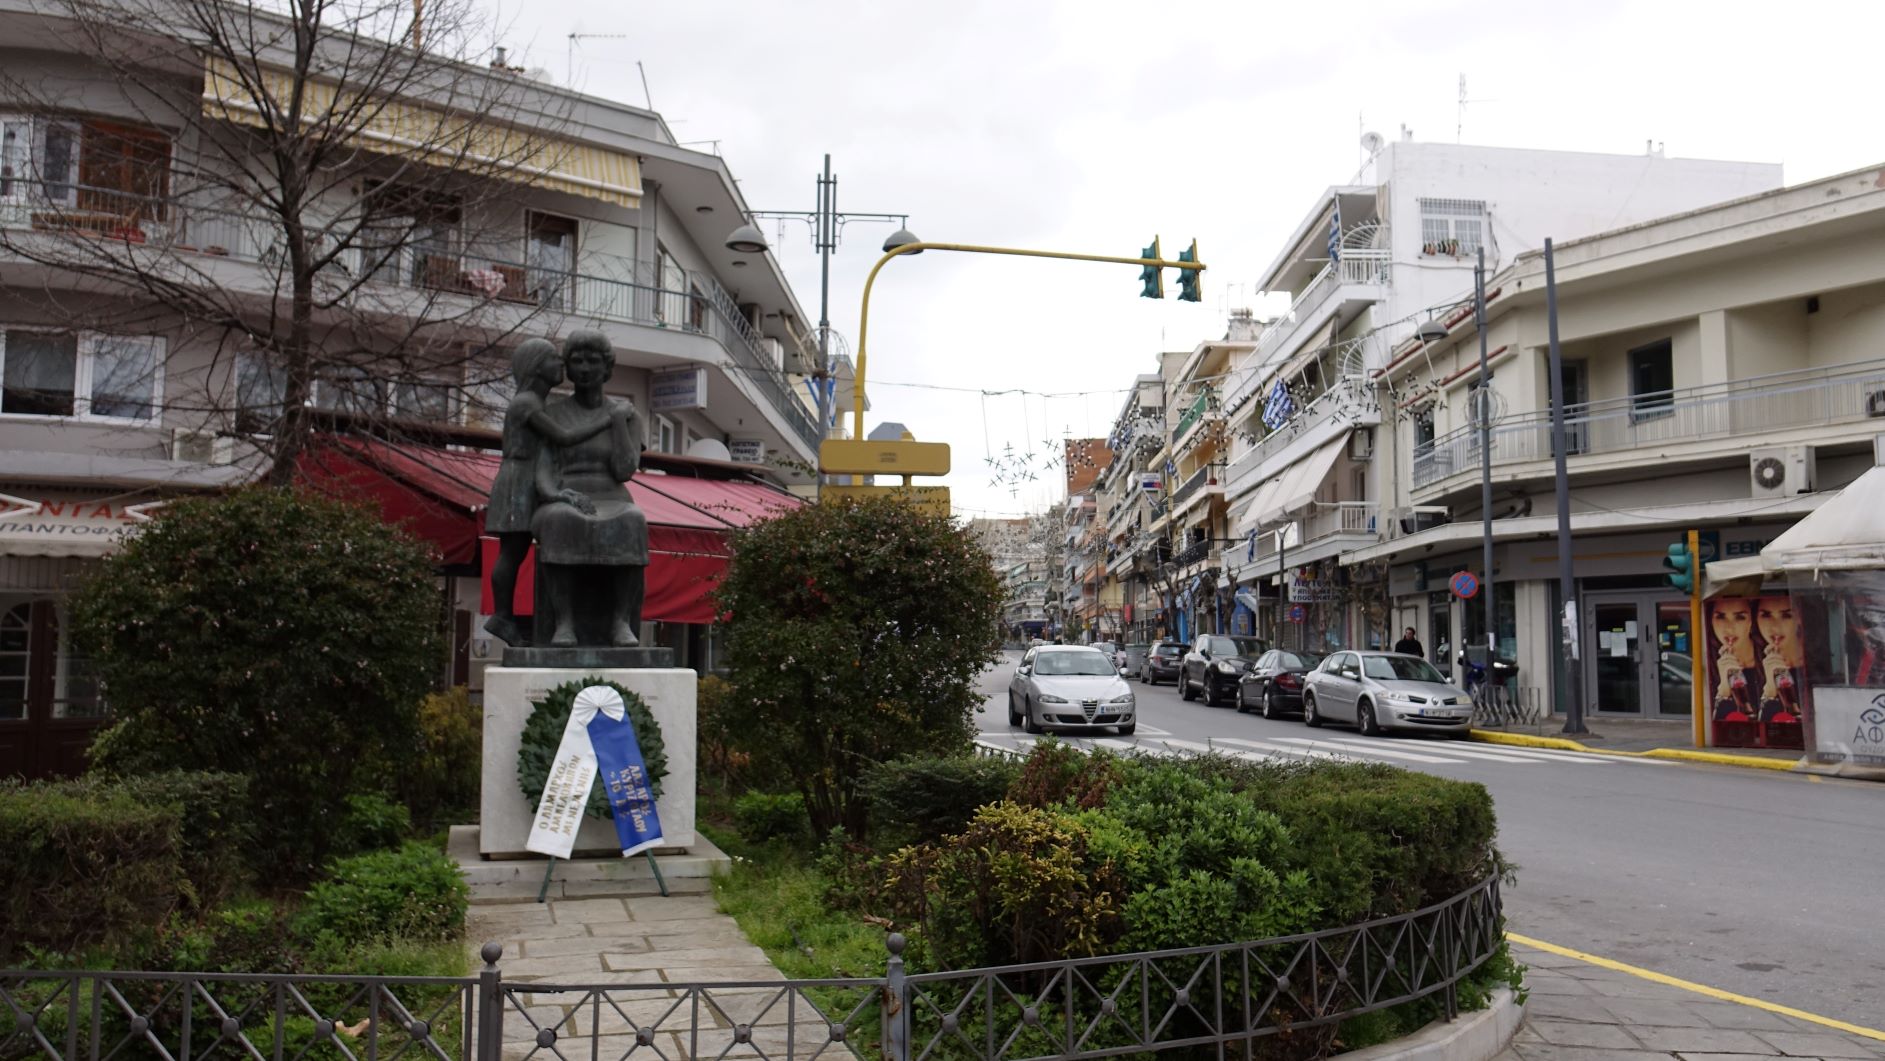  25η Μαρτίου 2020|Αμπελόκηποι Θεσσαλονίκης